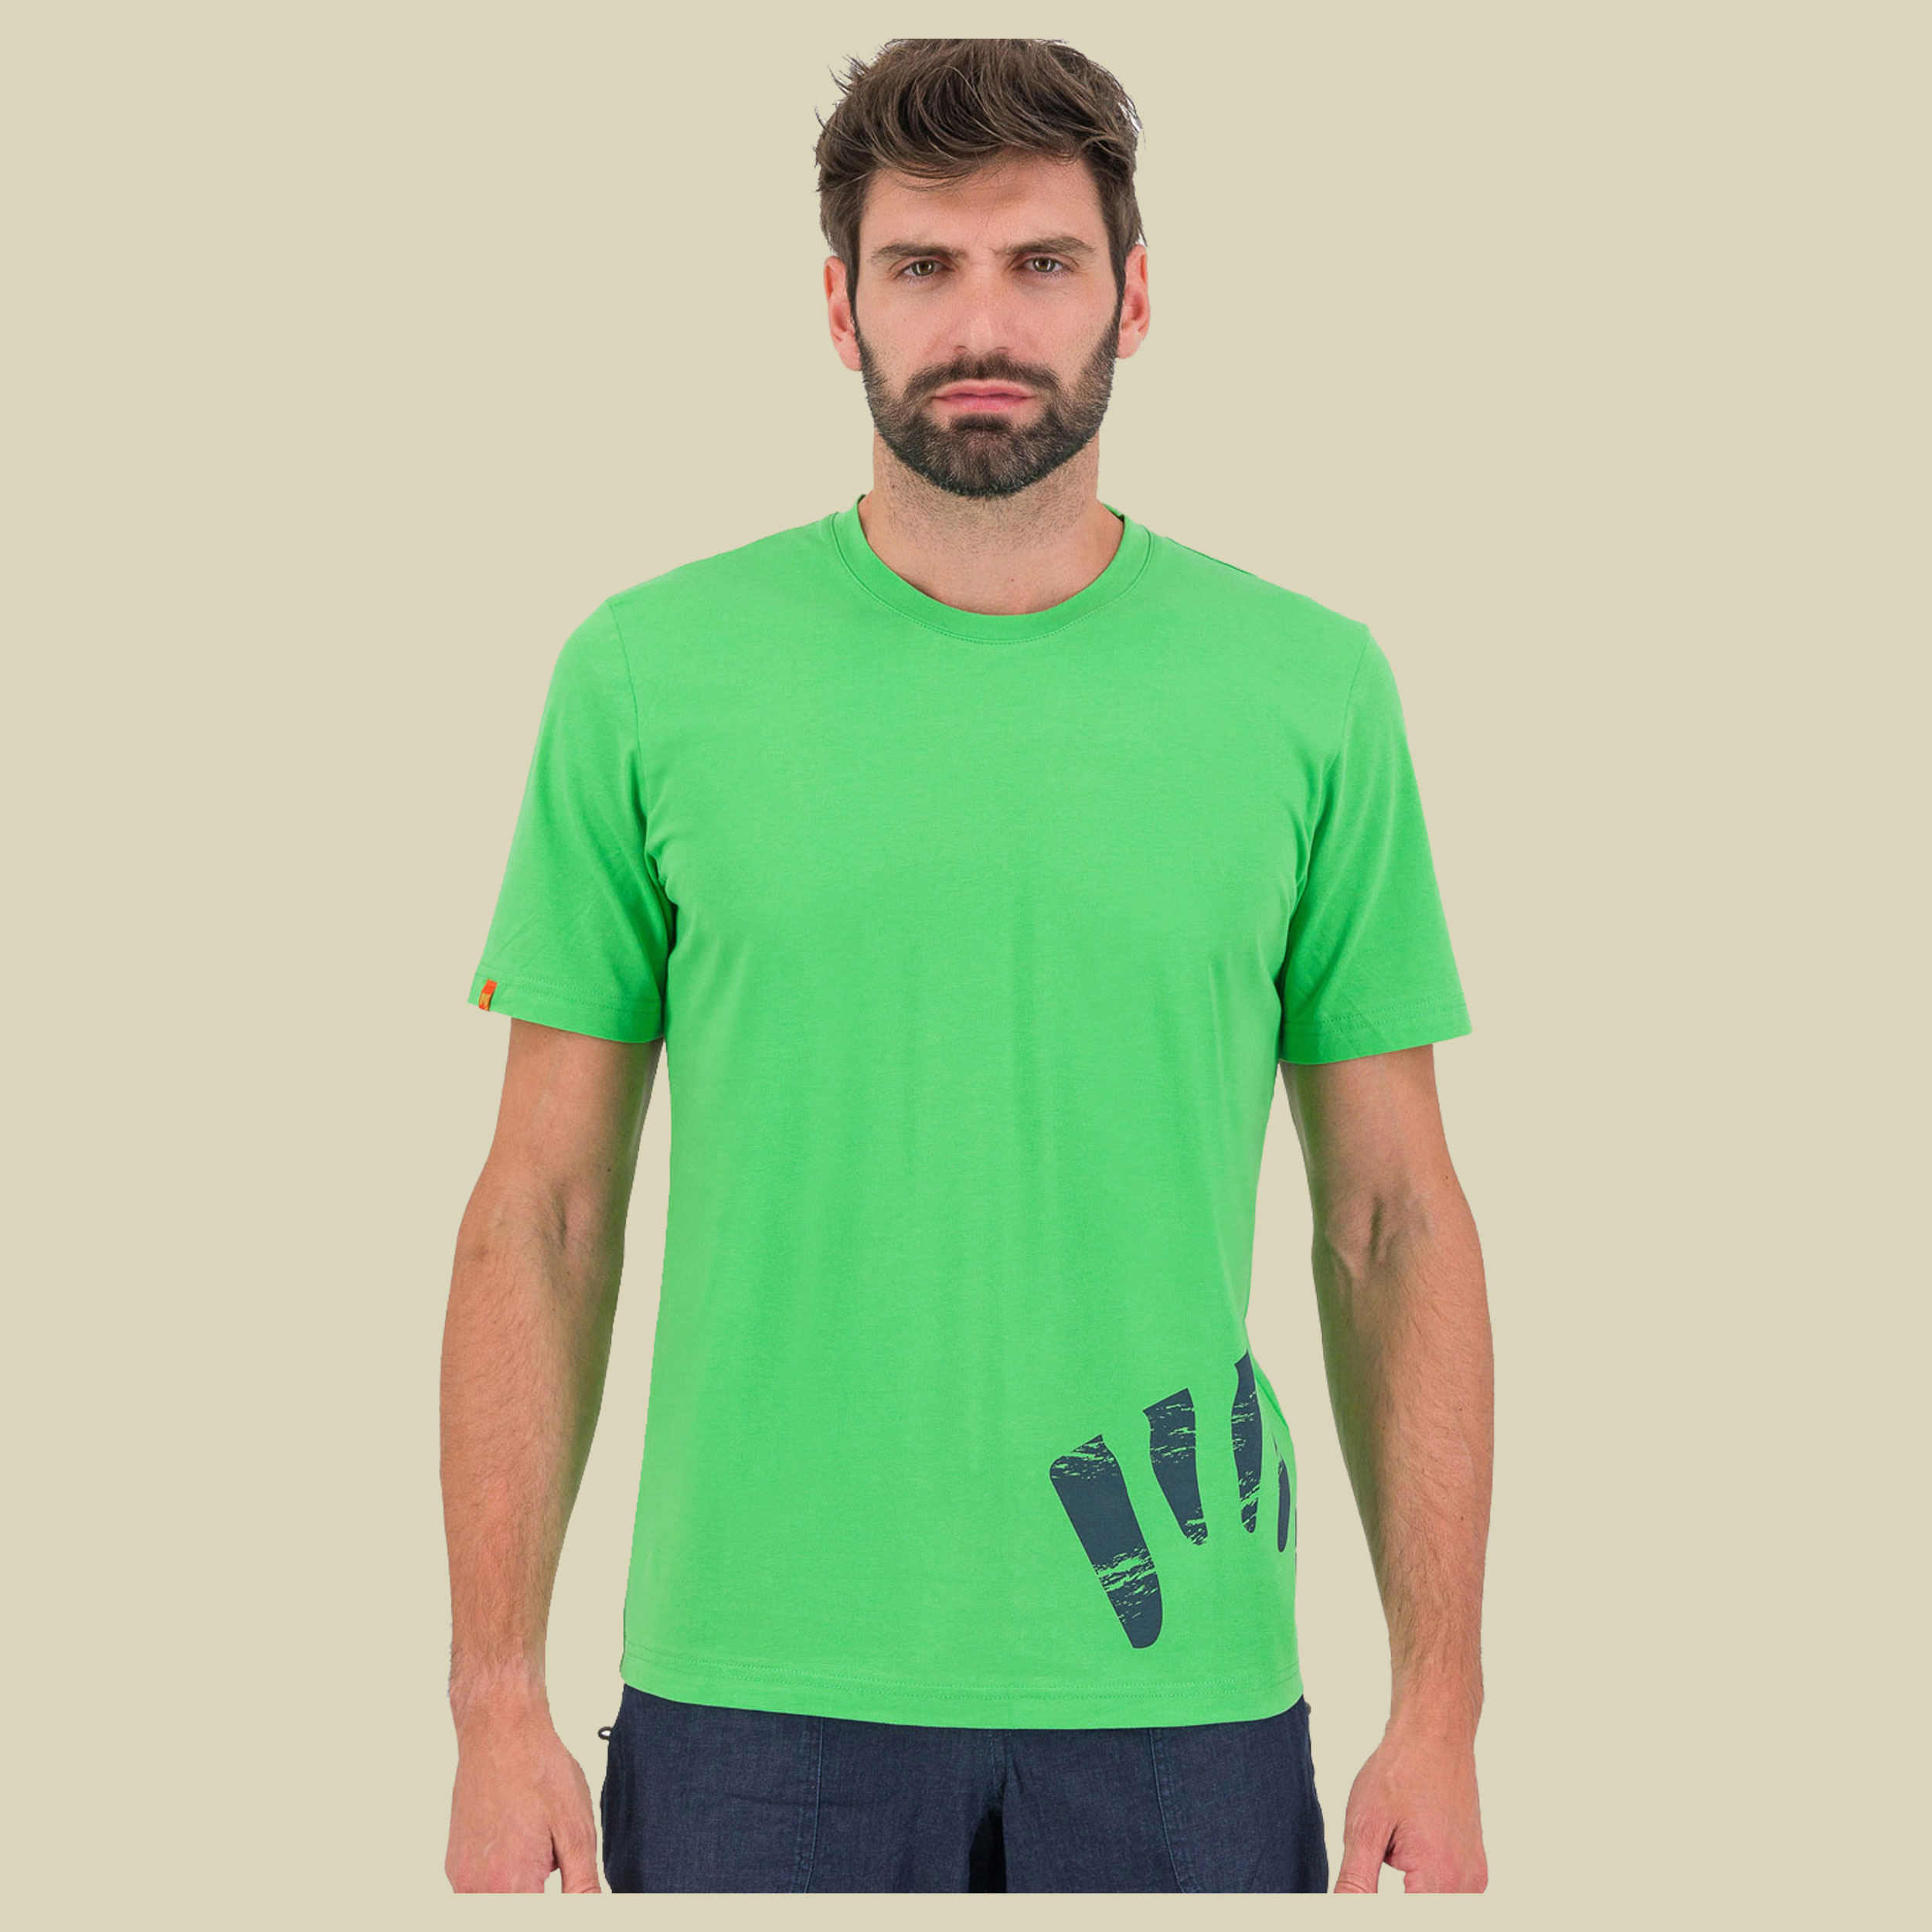 Astro Alpino T-Shirt Men Größe M  Farbe jasmine green